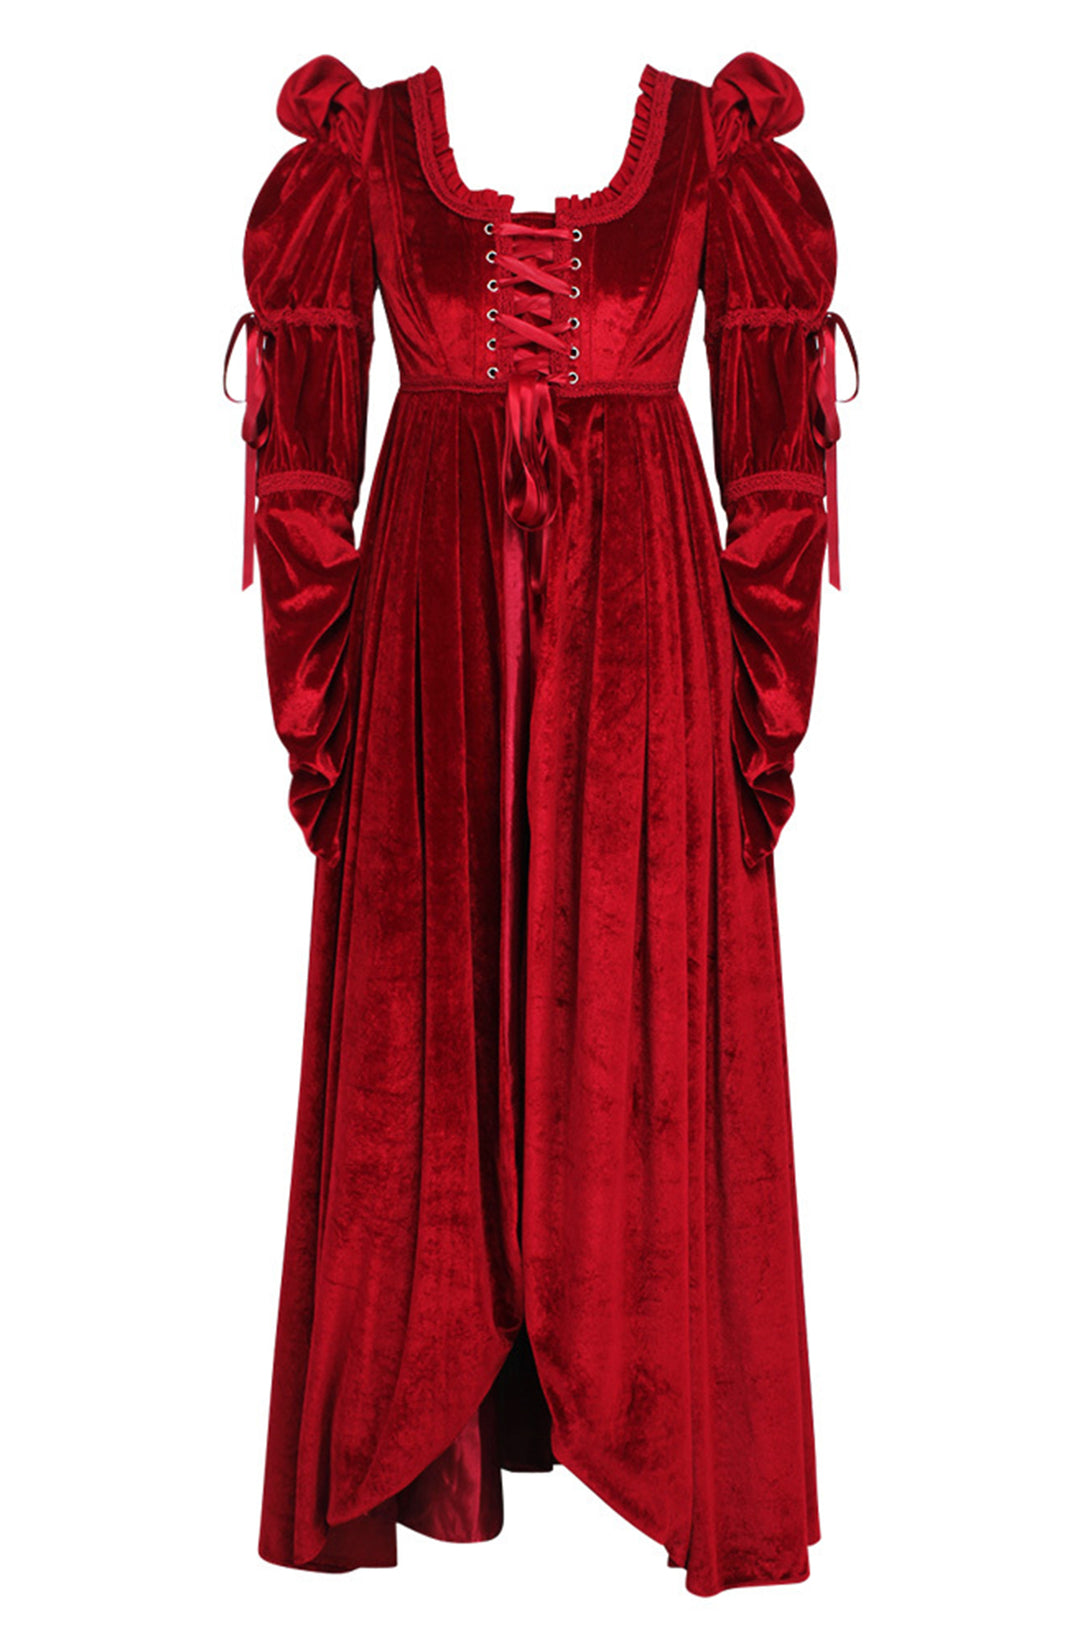 Red Velvet Bridgerton Dress - Regency Empire Waist 9